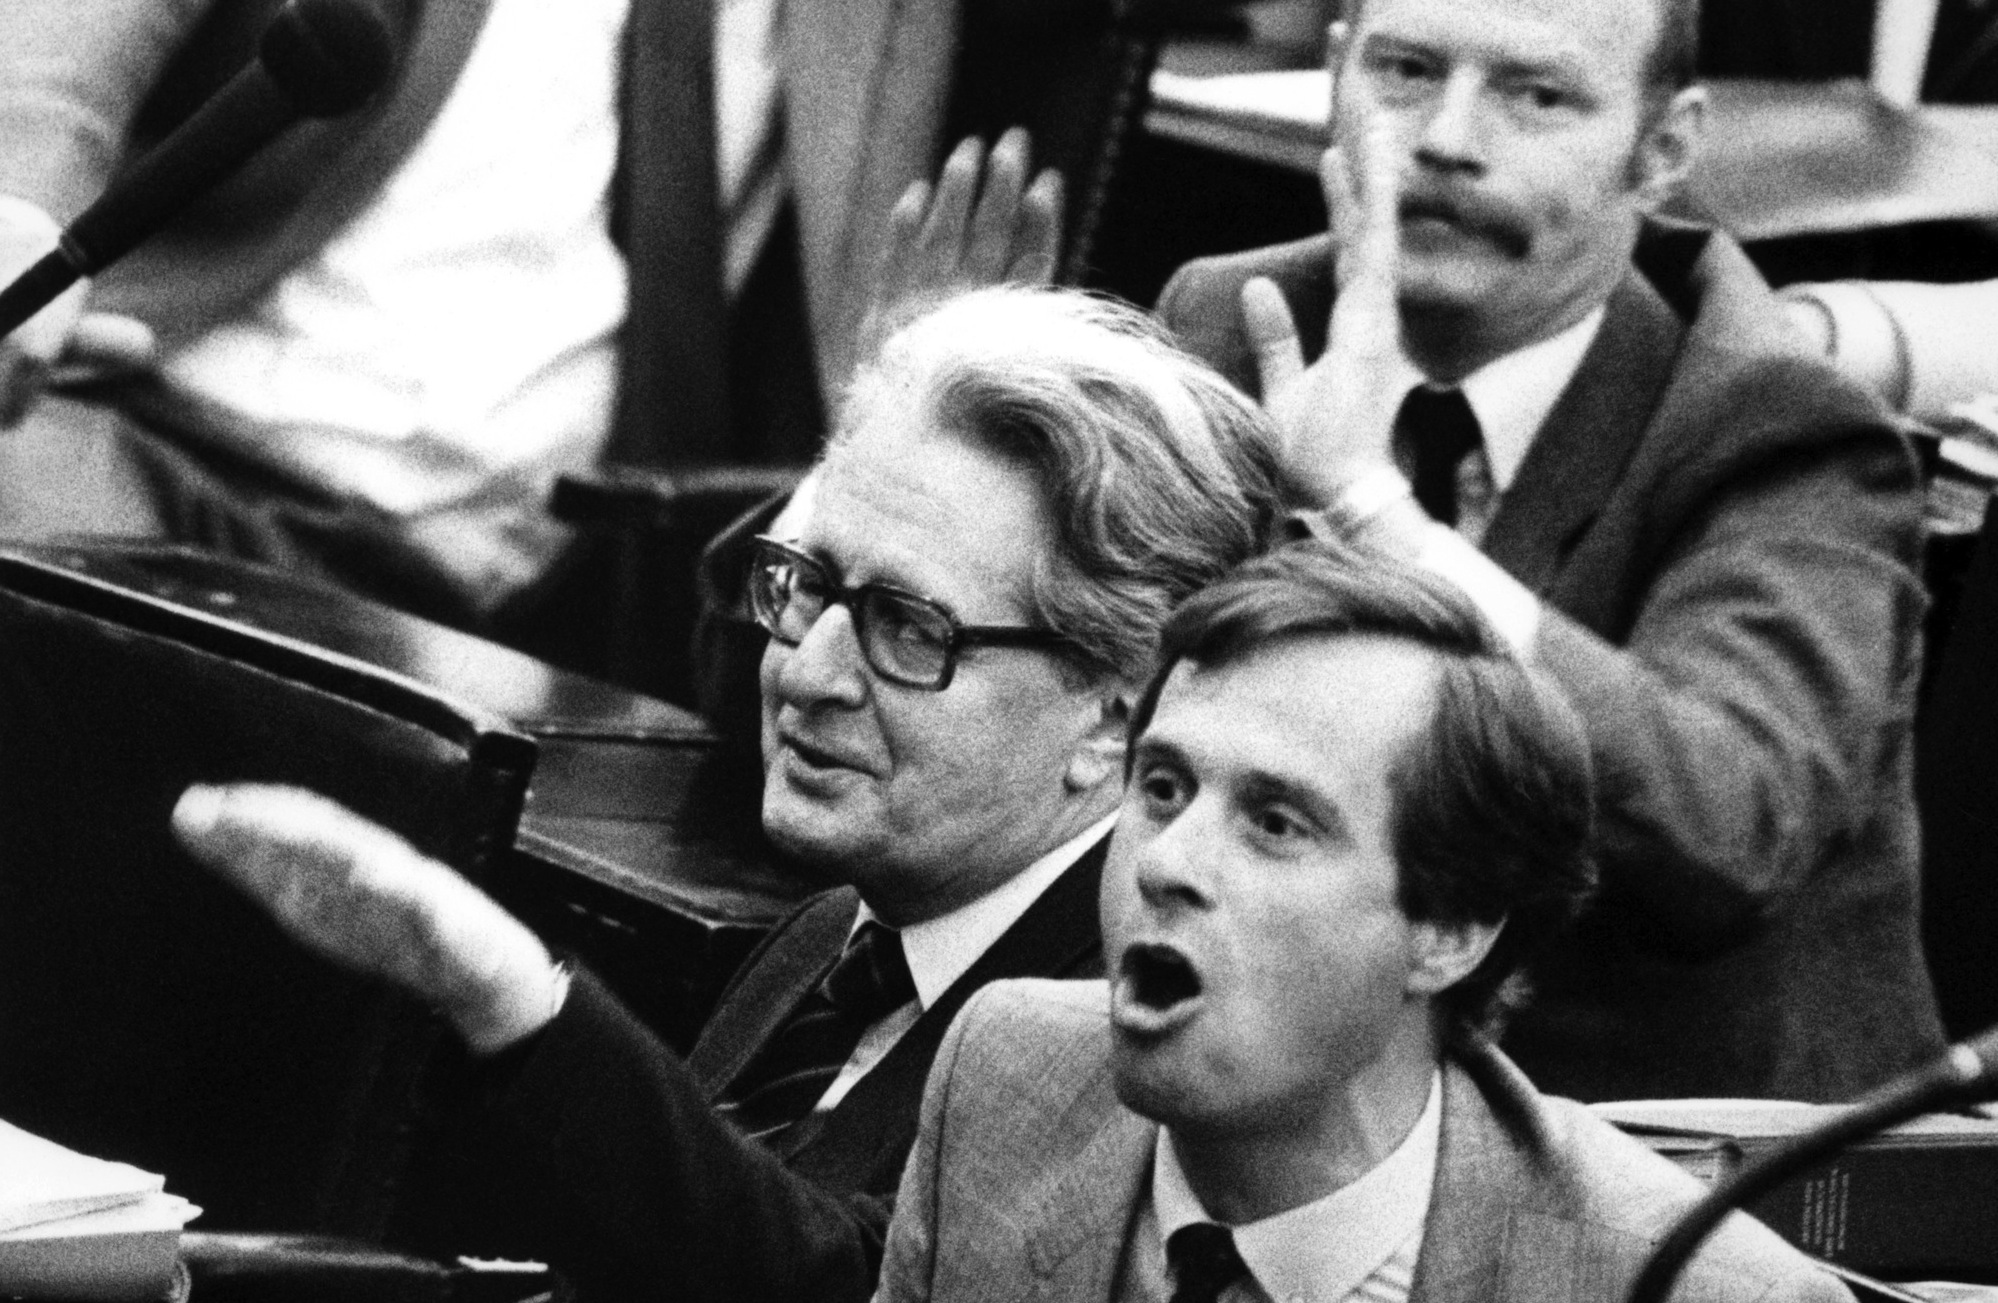 Foto: Protest bei der SPD-Opposition am 05.05.1983 im Deutschen Bundestag in Bonn: links Hans-Jochen Vogel, vorn Dieter Spöri und dahinter Peter Struck.